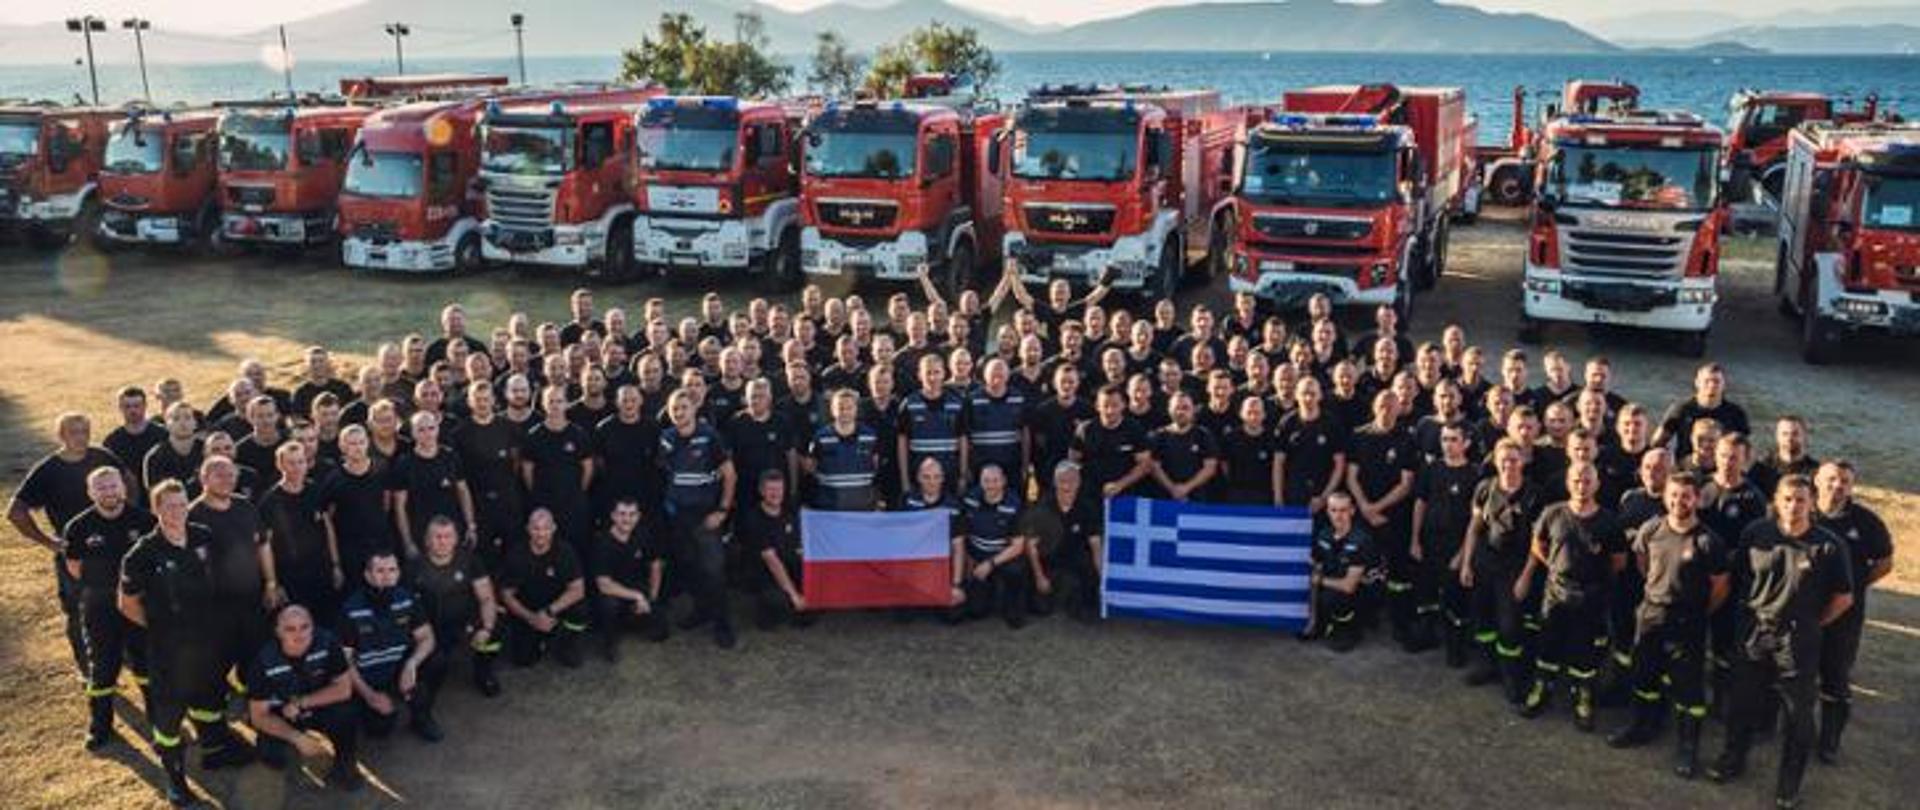 Zdjęcie grupy polskich strażaków na terytorium Grecji. Grupa 143 strażaków z polski oraz kilku strażaków z Grecji trzymają flagi Polski i Grecji. W tle samochody pożarnicze ustawione w kolumnie